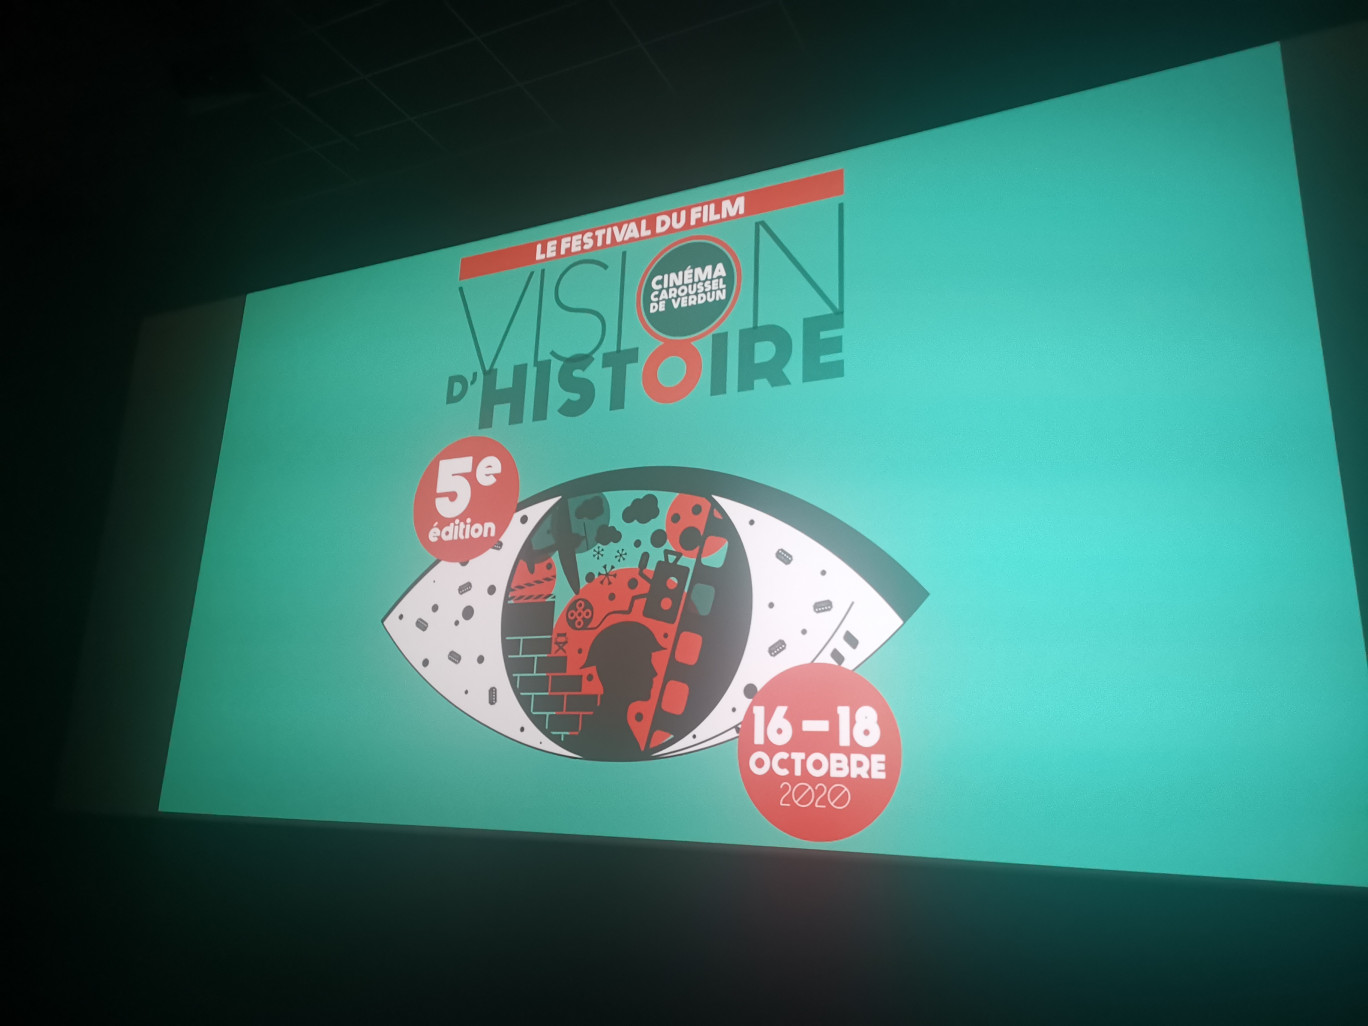 5e édition du festival du film d’histoire à Verdun